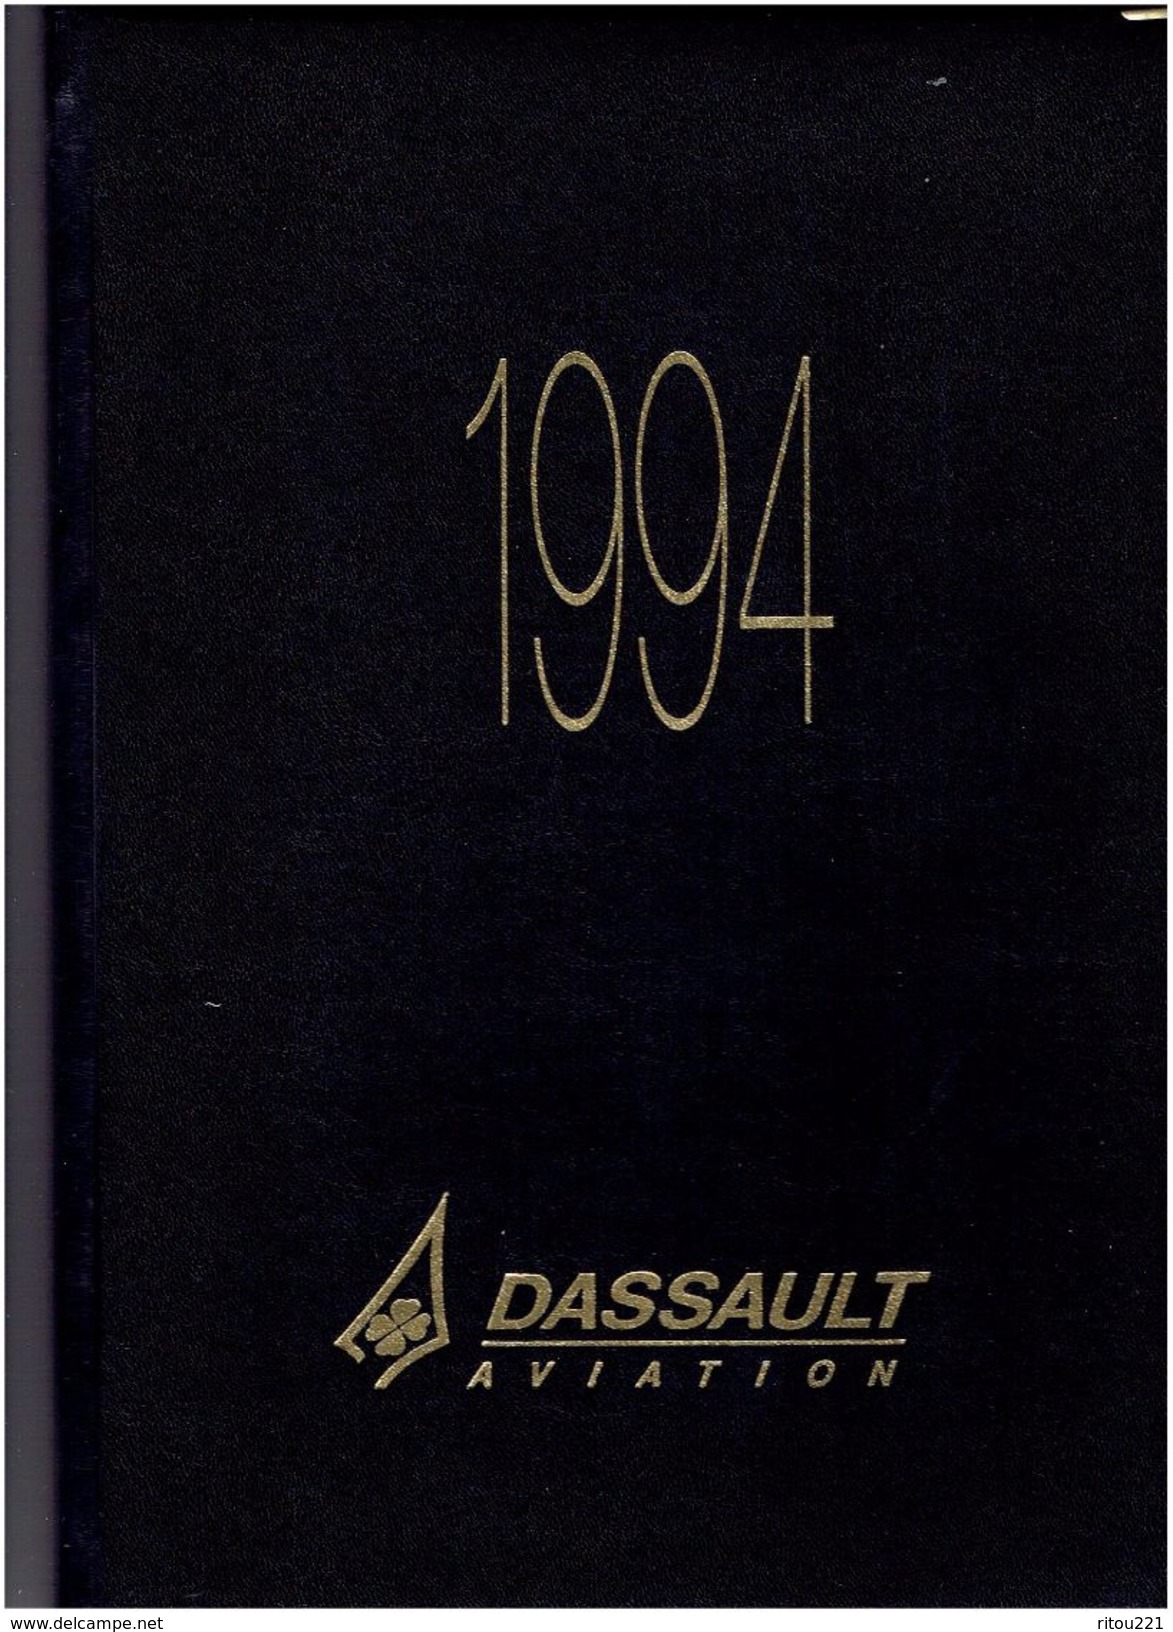 Agenda 1994 - DASSAULT AVIATION - Avion ESPACE VOITURE DE COURSE PEUGEOT 905 Esso HELARY BOUCHUT - Papiere